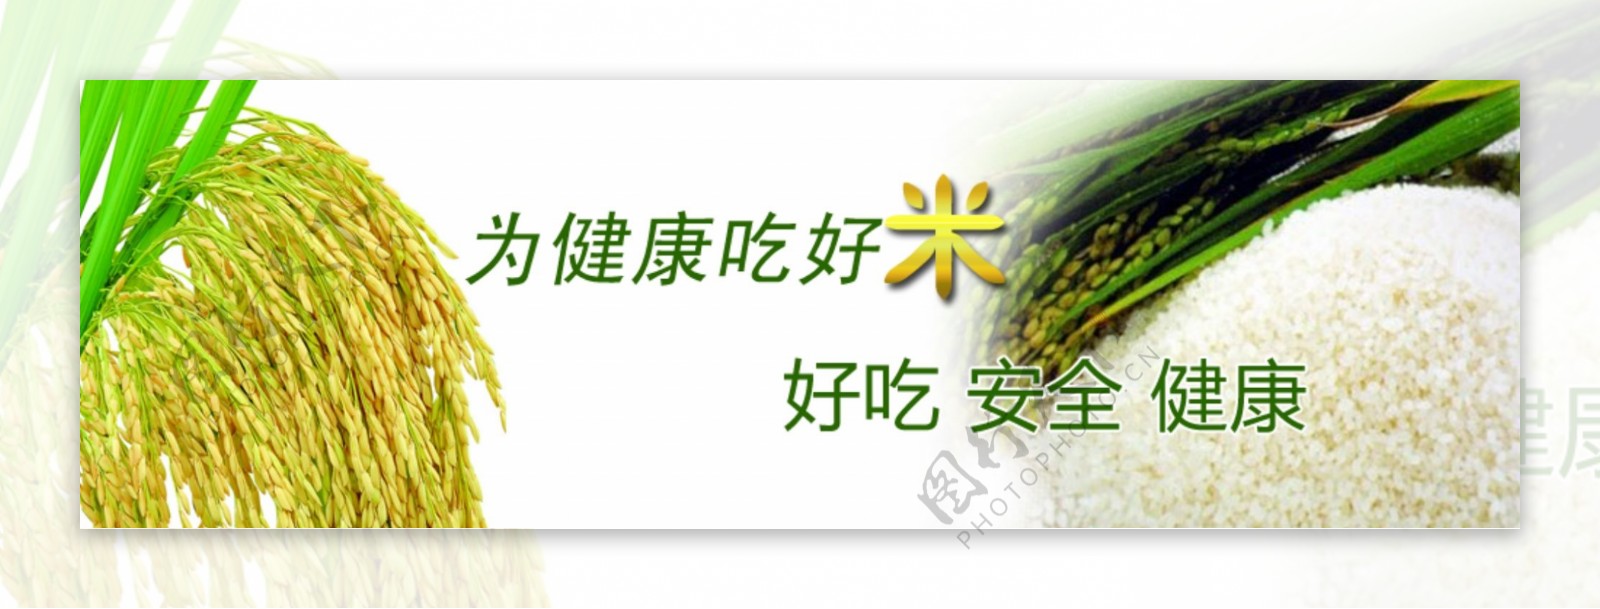 米banner水稻图片